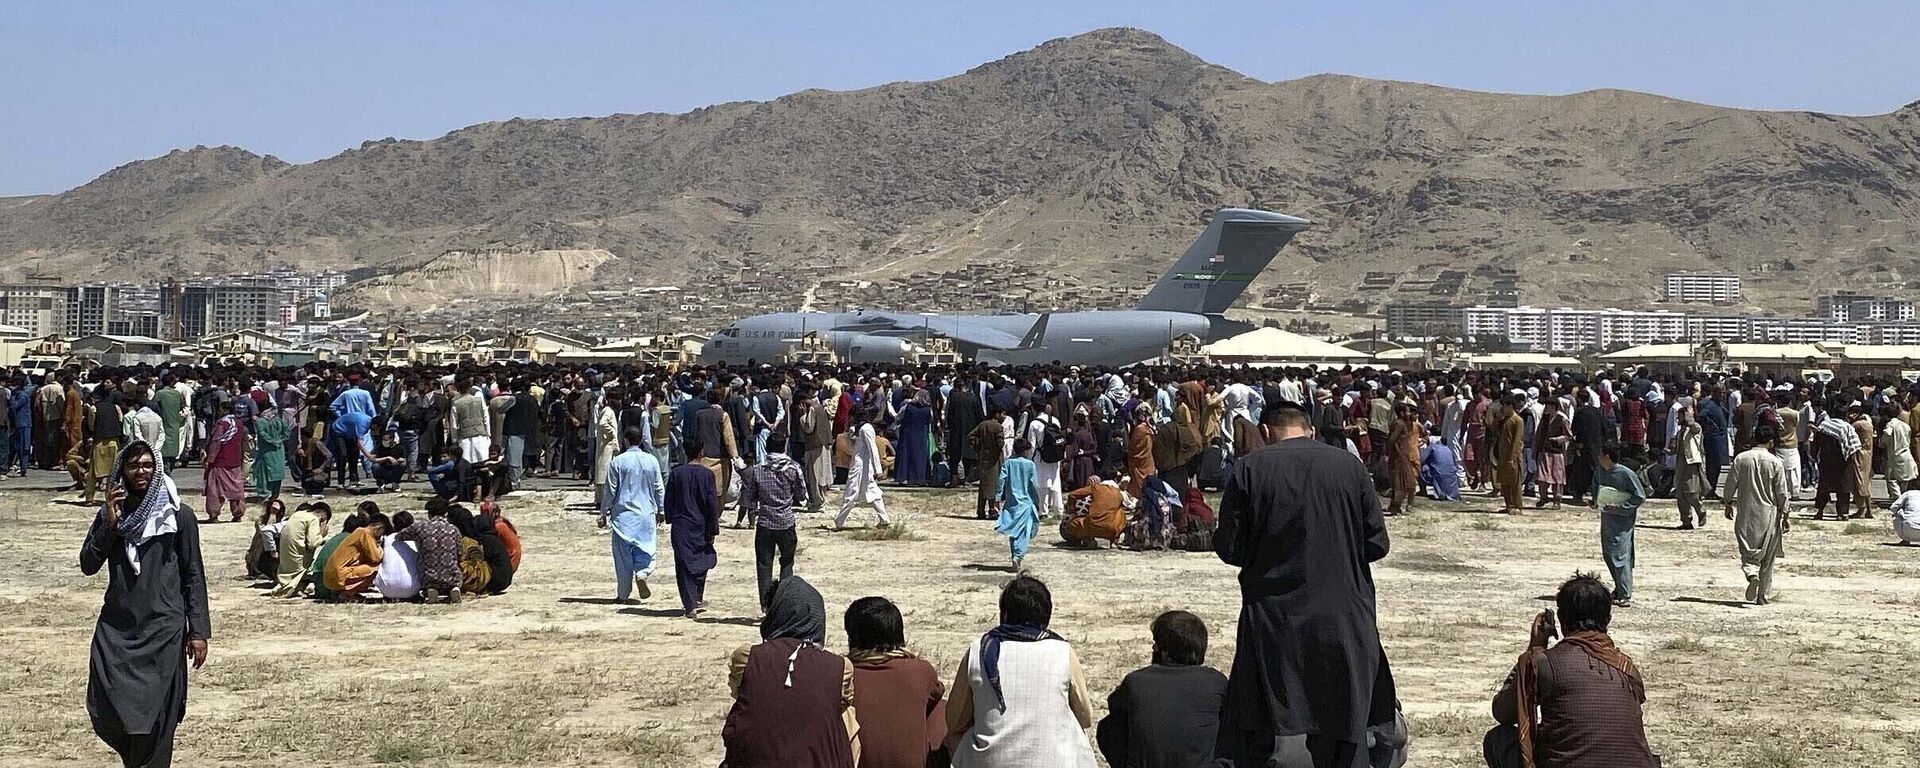 في 16 أغسطس 2021، صورة ملف تجمع مئات الأشخاص بالقرب من طائرة نقل تابعة للقوات الجوية الأمريكية من طراز سي-17، على طول محيط المطار الدولي في كابول، أفغانستان. - سبوتنيك عربي, 1920, 26.08.2021